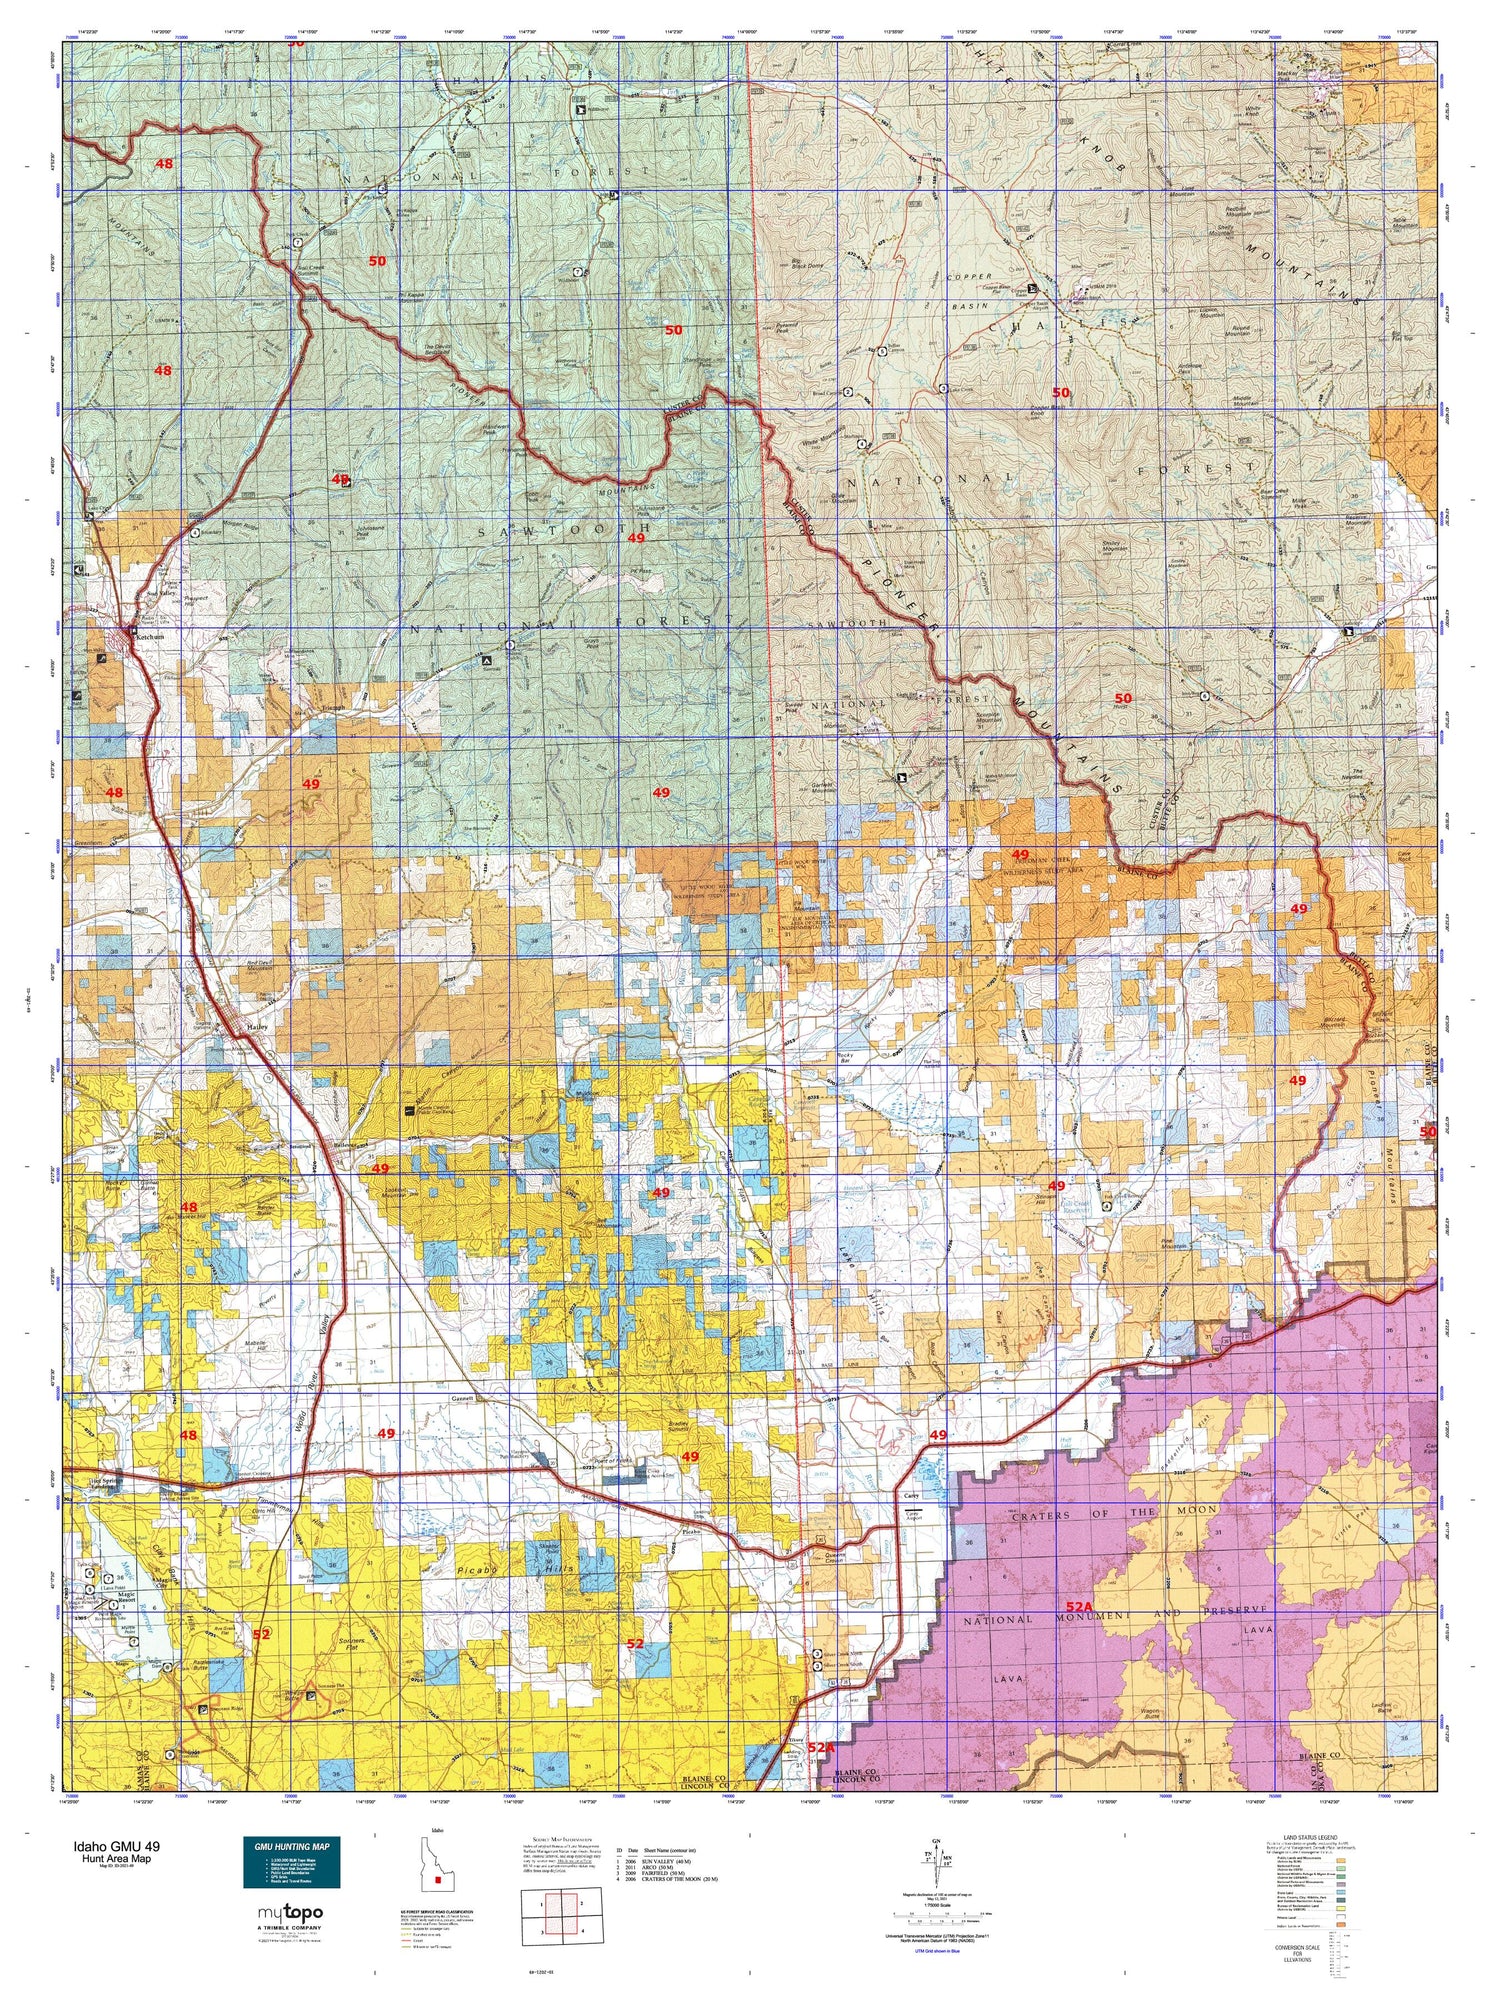 Idaho GMU 49 Map Image